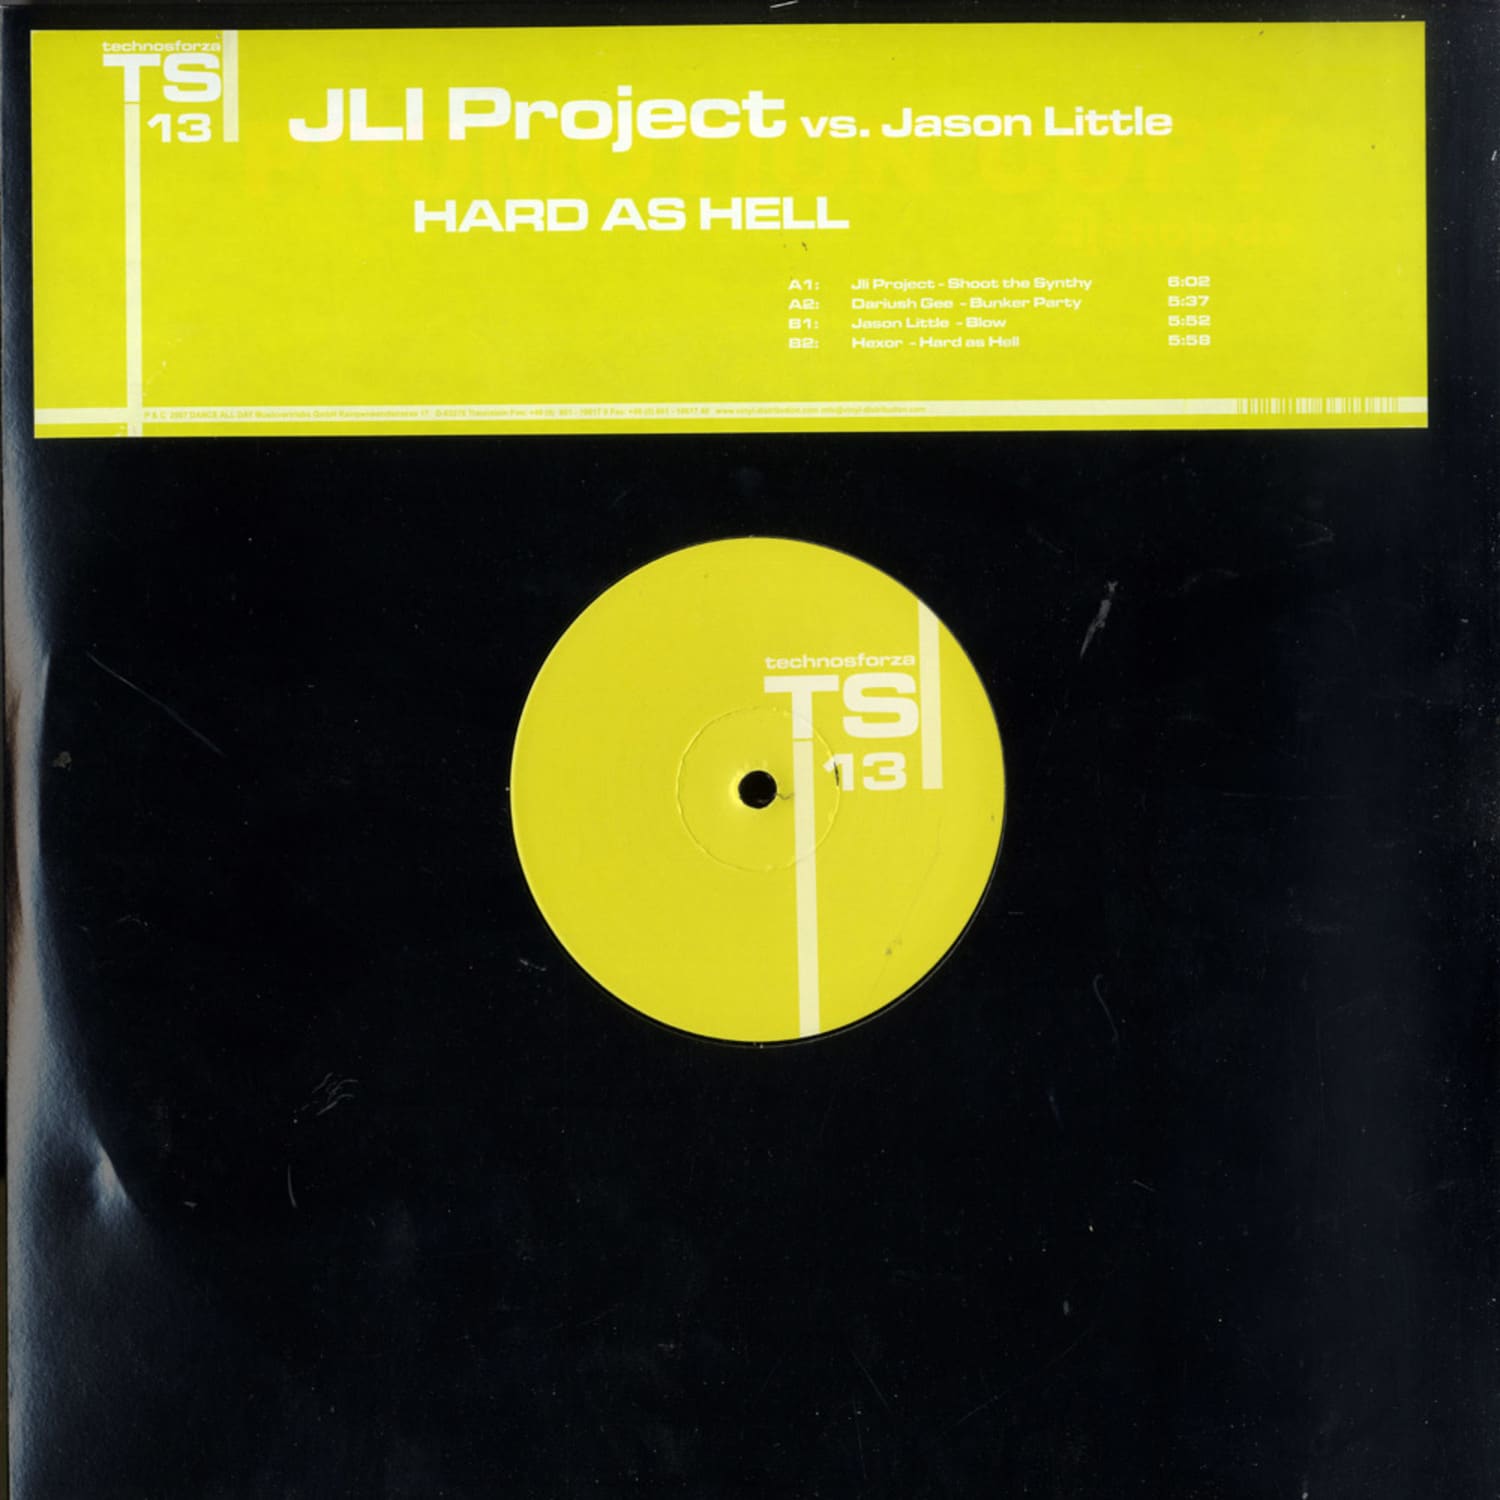 JLI Project vs Jason Little - HARD AS HELL